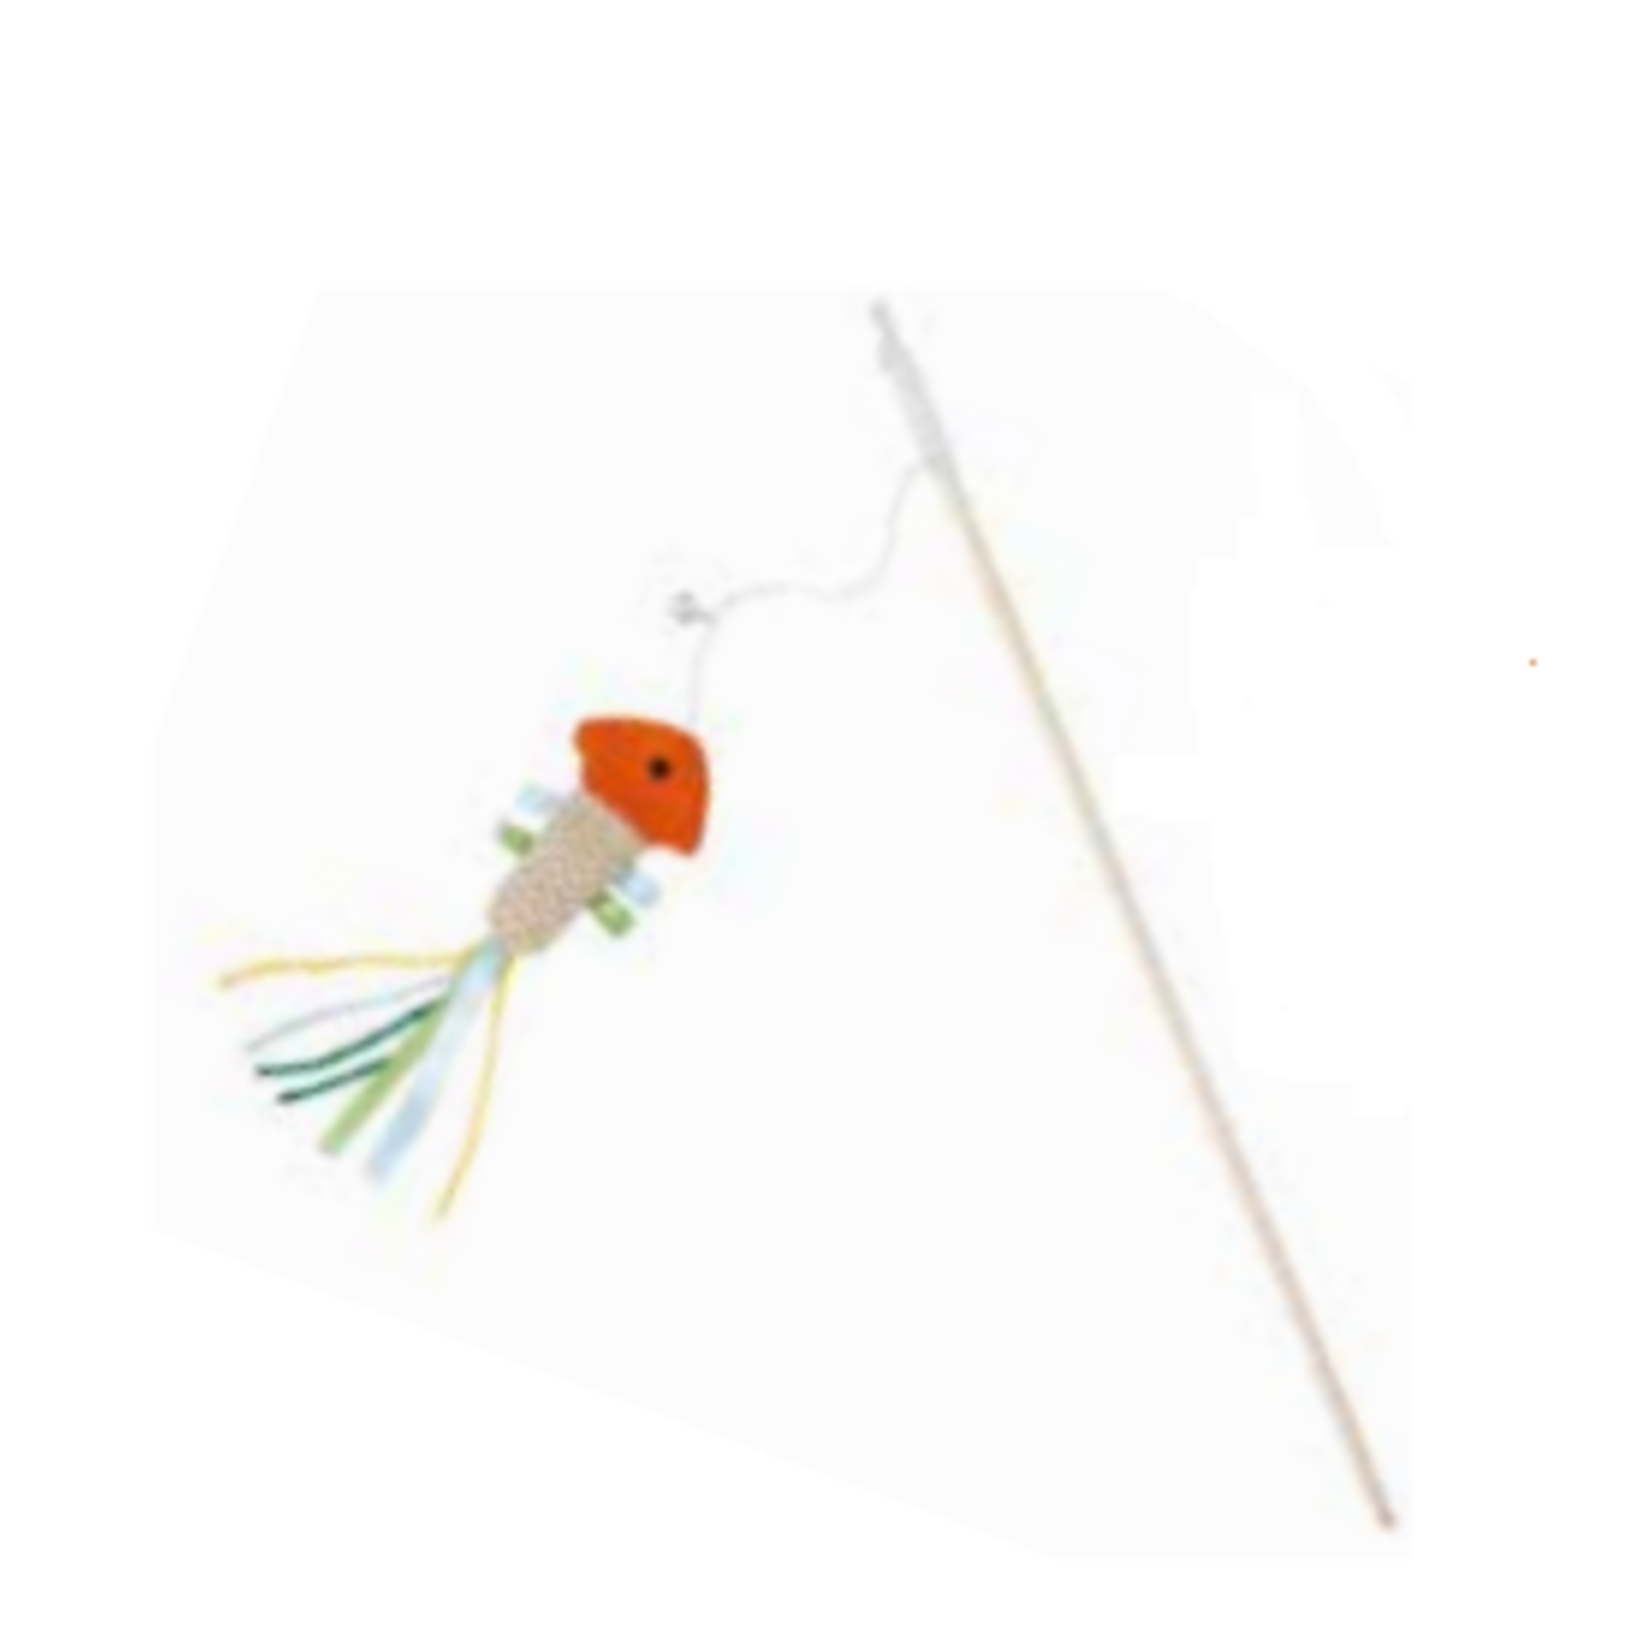 bud'z Toy swing stick fish - Rod 16 in - Toy 5.5 in